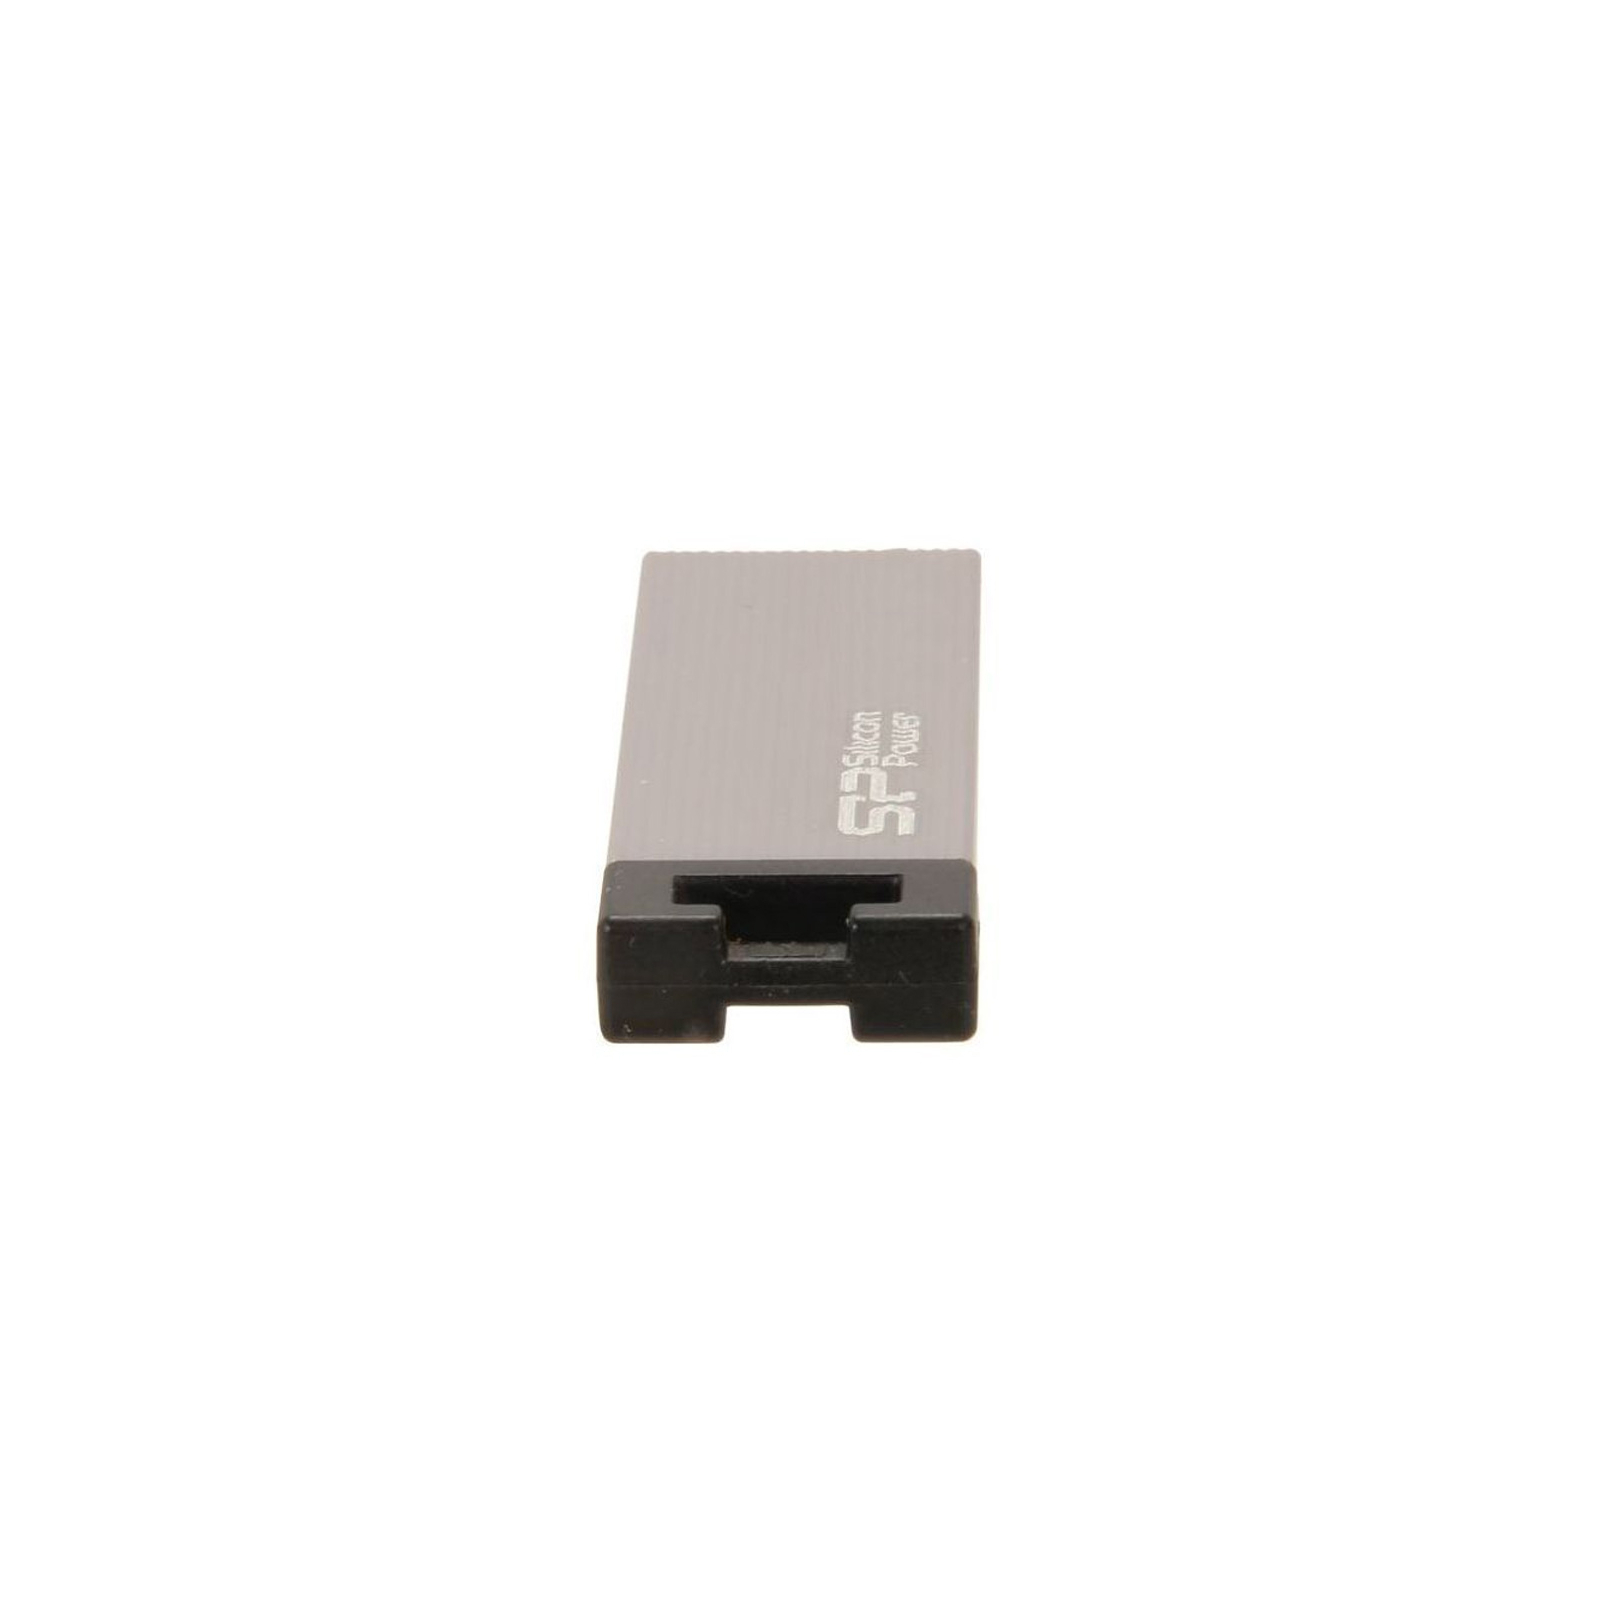 USB флеш накопичувач Silicon Power 8GB Touch 835 USB 2.0 (SP008GBUF2835V1T / SP008GBUF2835V3T) зображення 4